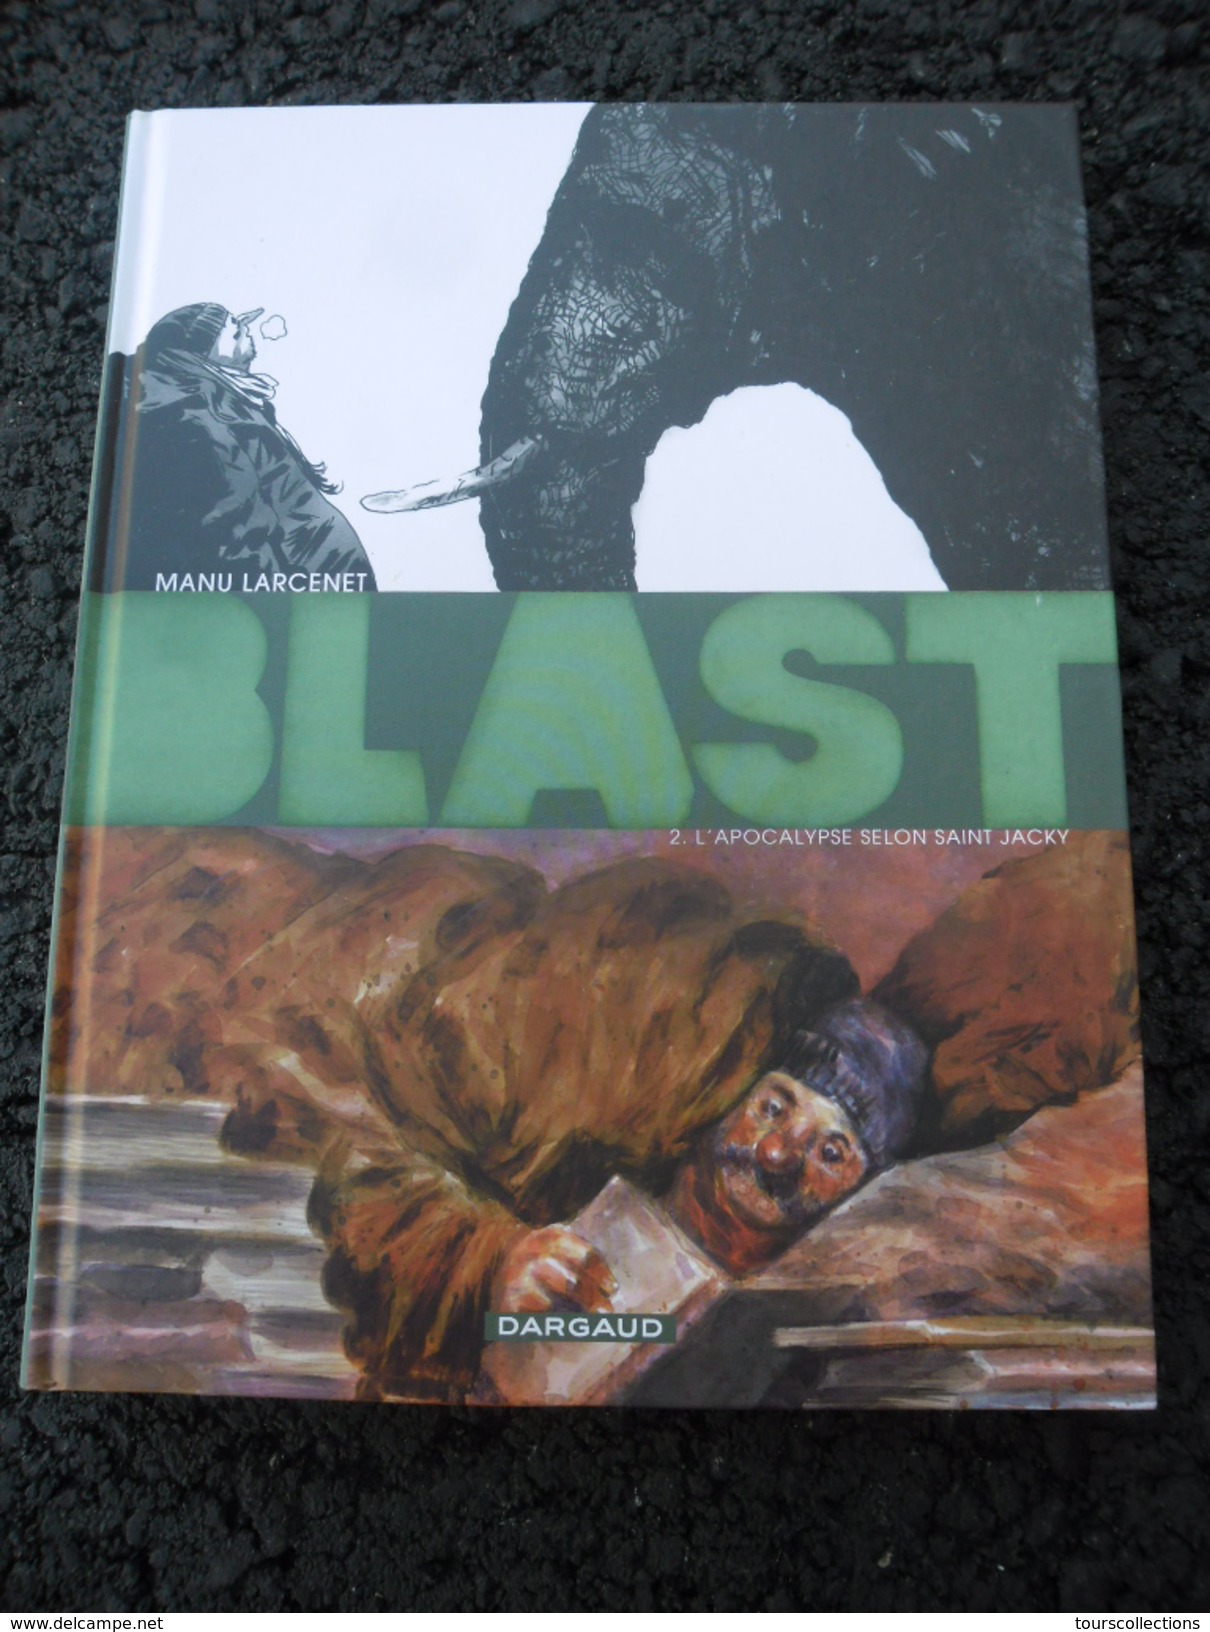 LOT Des 4 BD Série BLAST De Manu Larcenet Edition Dargaud @ état Neuf Jamais Lu @ Tomes 1,2,3 Et 4 - Wholesale, Bulk Lots